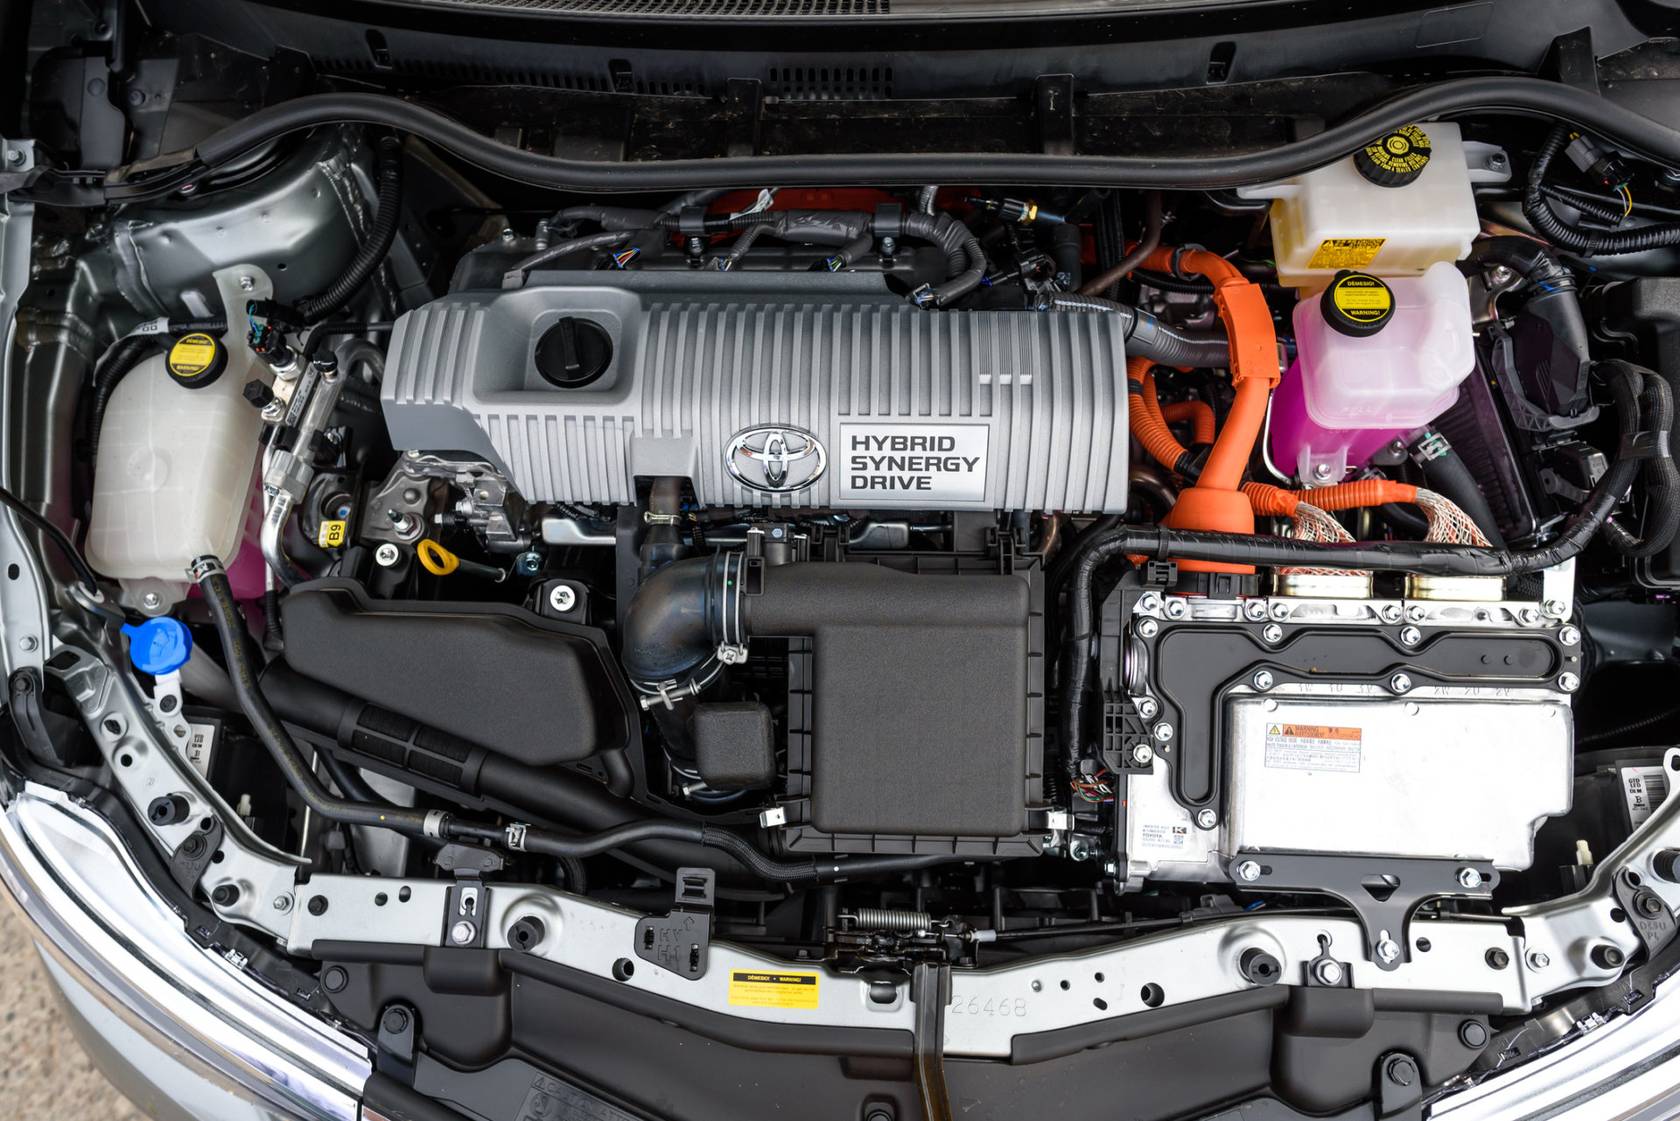 Toyota Auris II - tak prezentuje się silnik po podniesieniu klapy. Połączenie napędu benzynowego i elektrycznego oferuje w sumie 136 KM mocy.